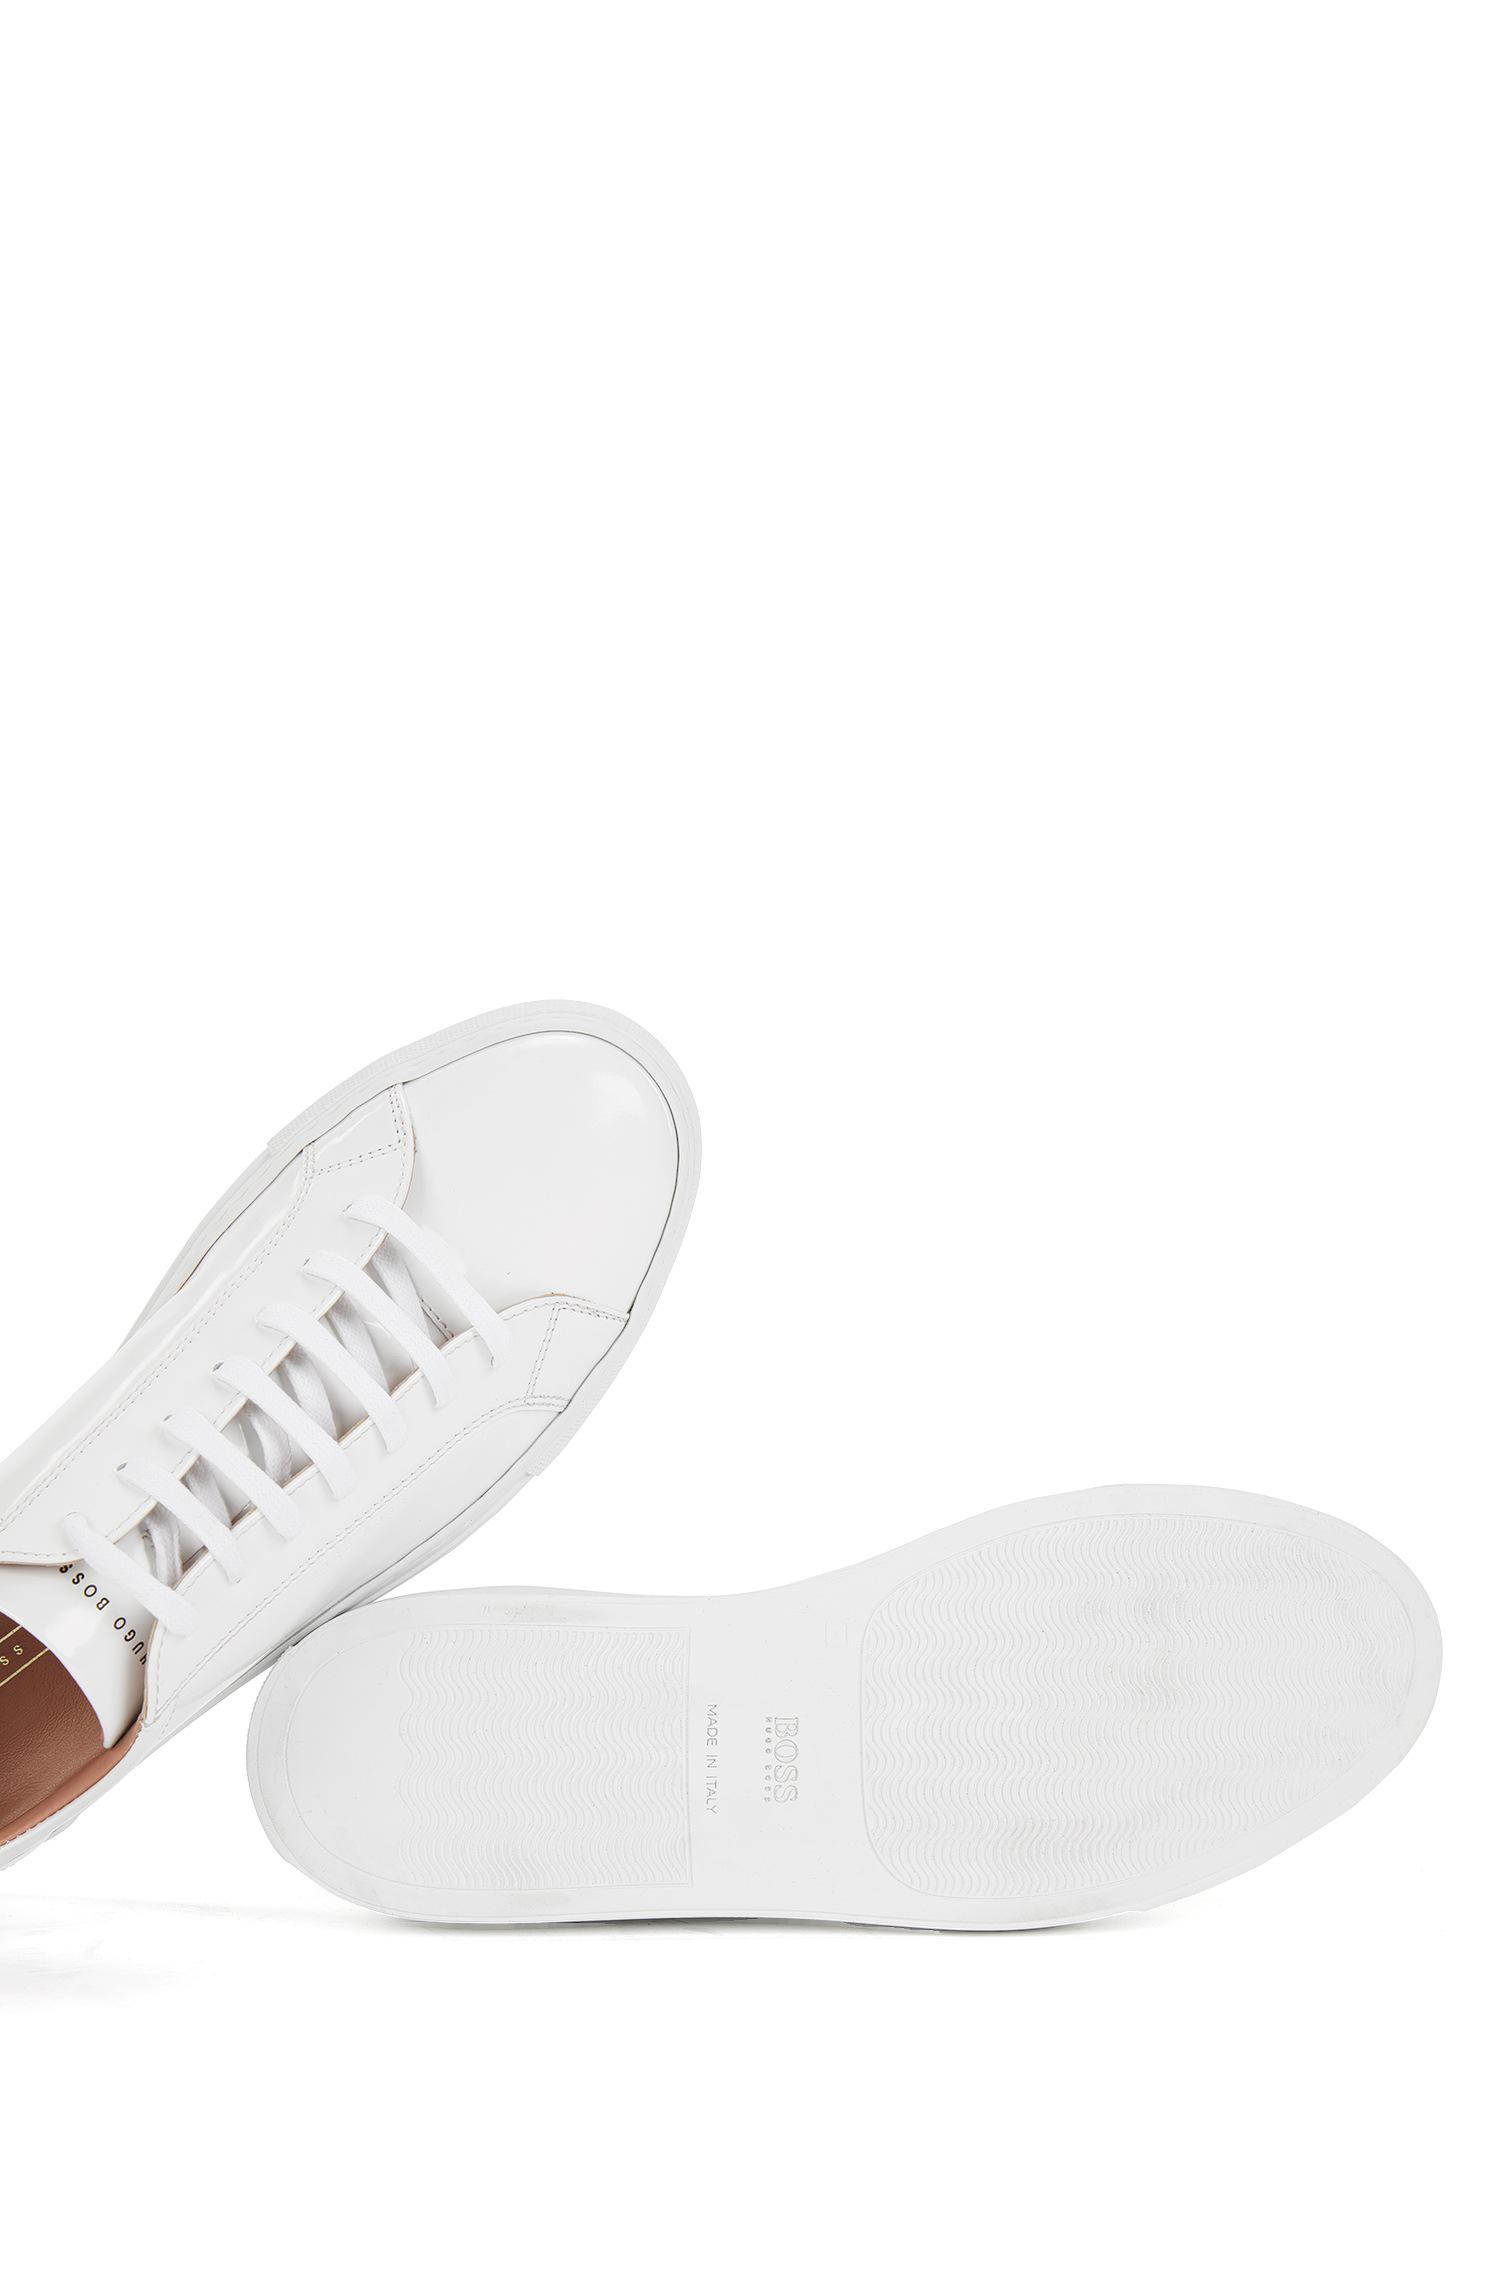 BOSS by HUGO BOSS Leather Sneaker | Kate Low Cut C in White | Lyst